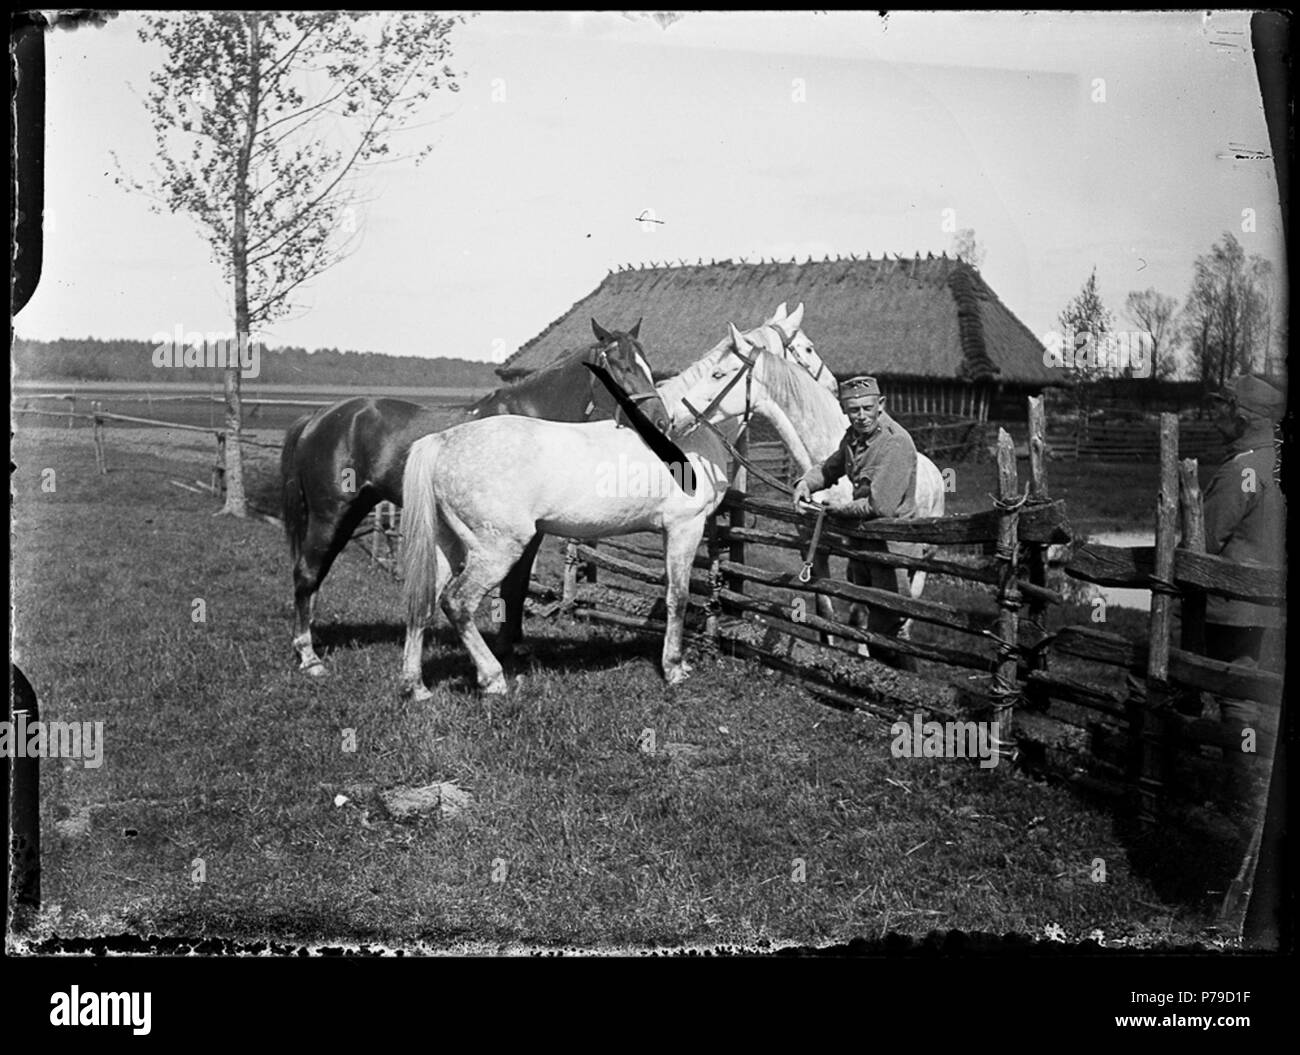 37 Konie 2 pułku ułanów LP, Wołyń, 1916 Stock Photo